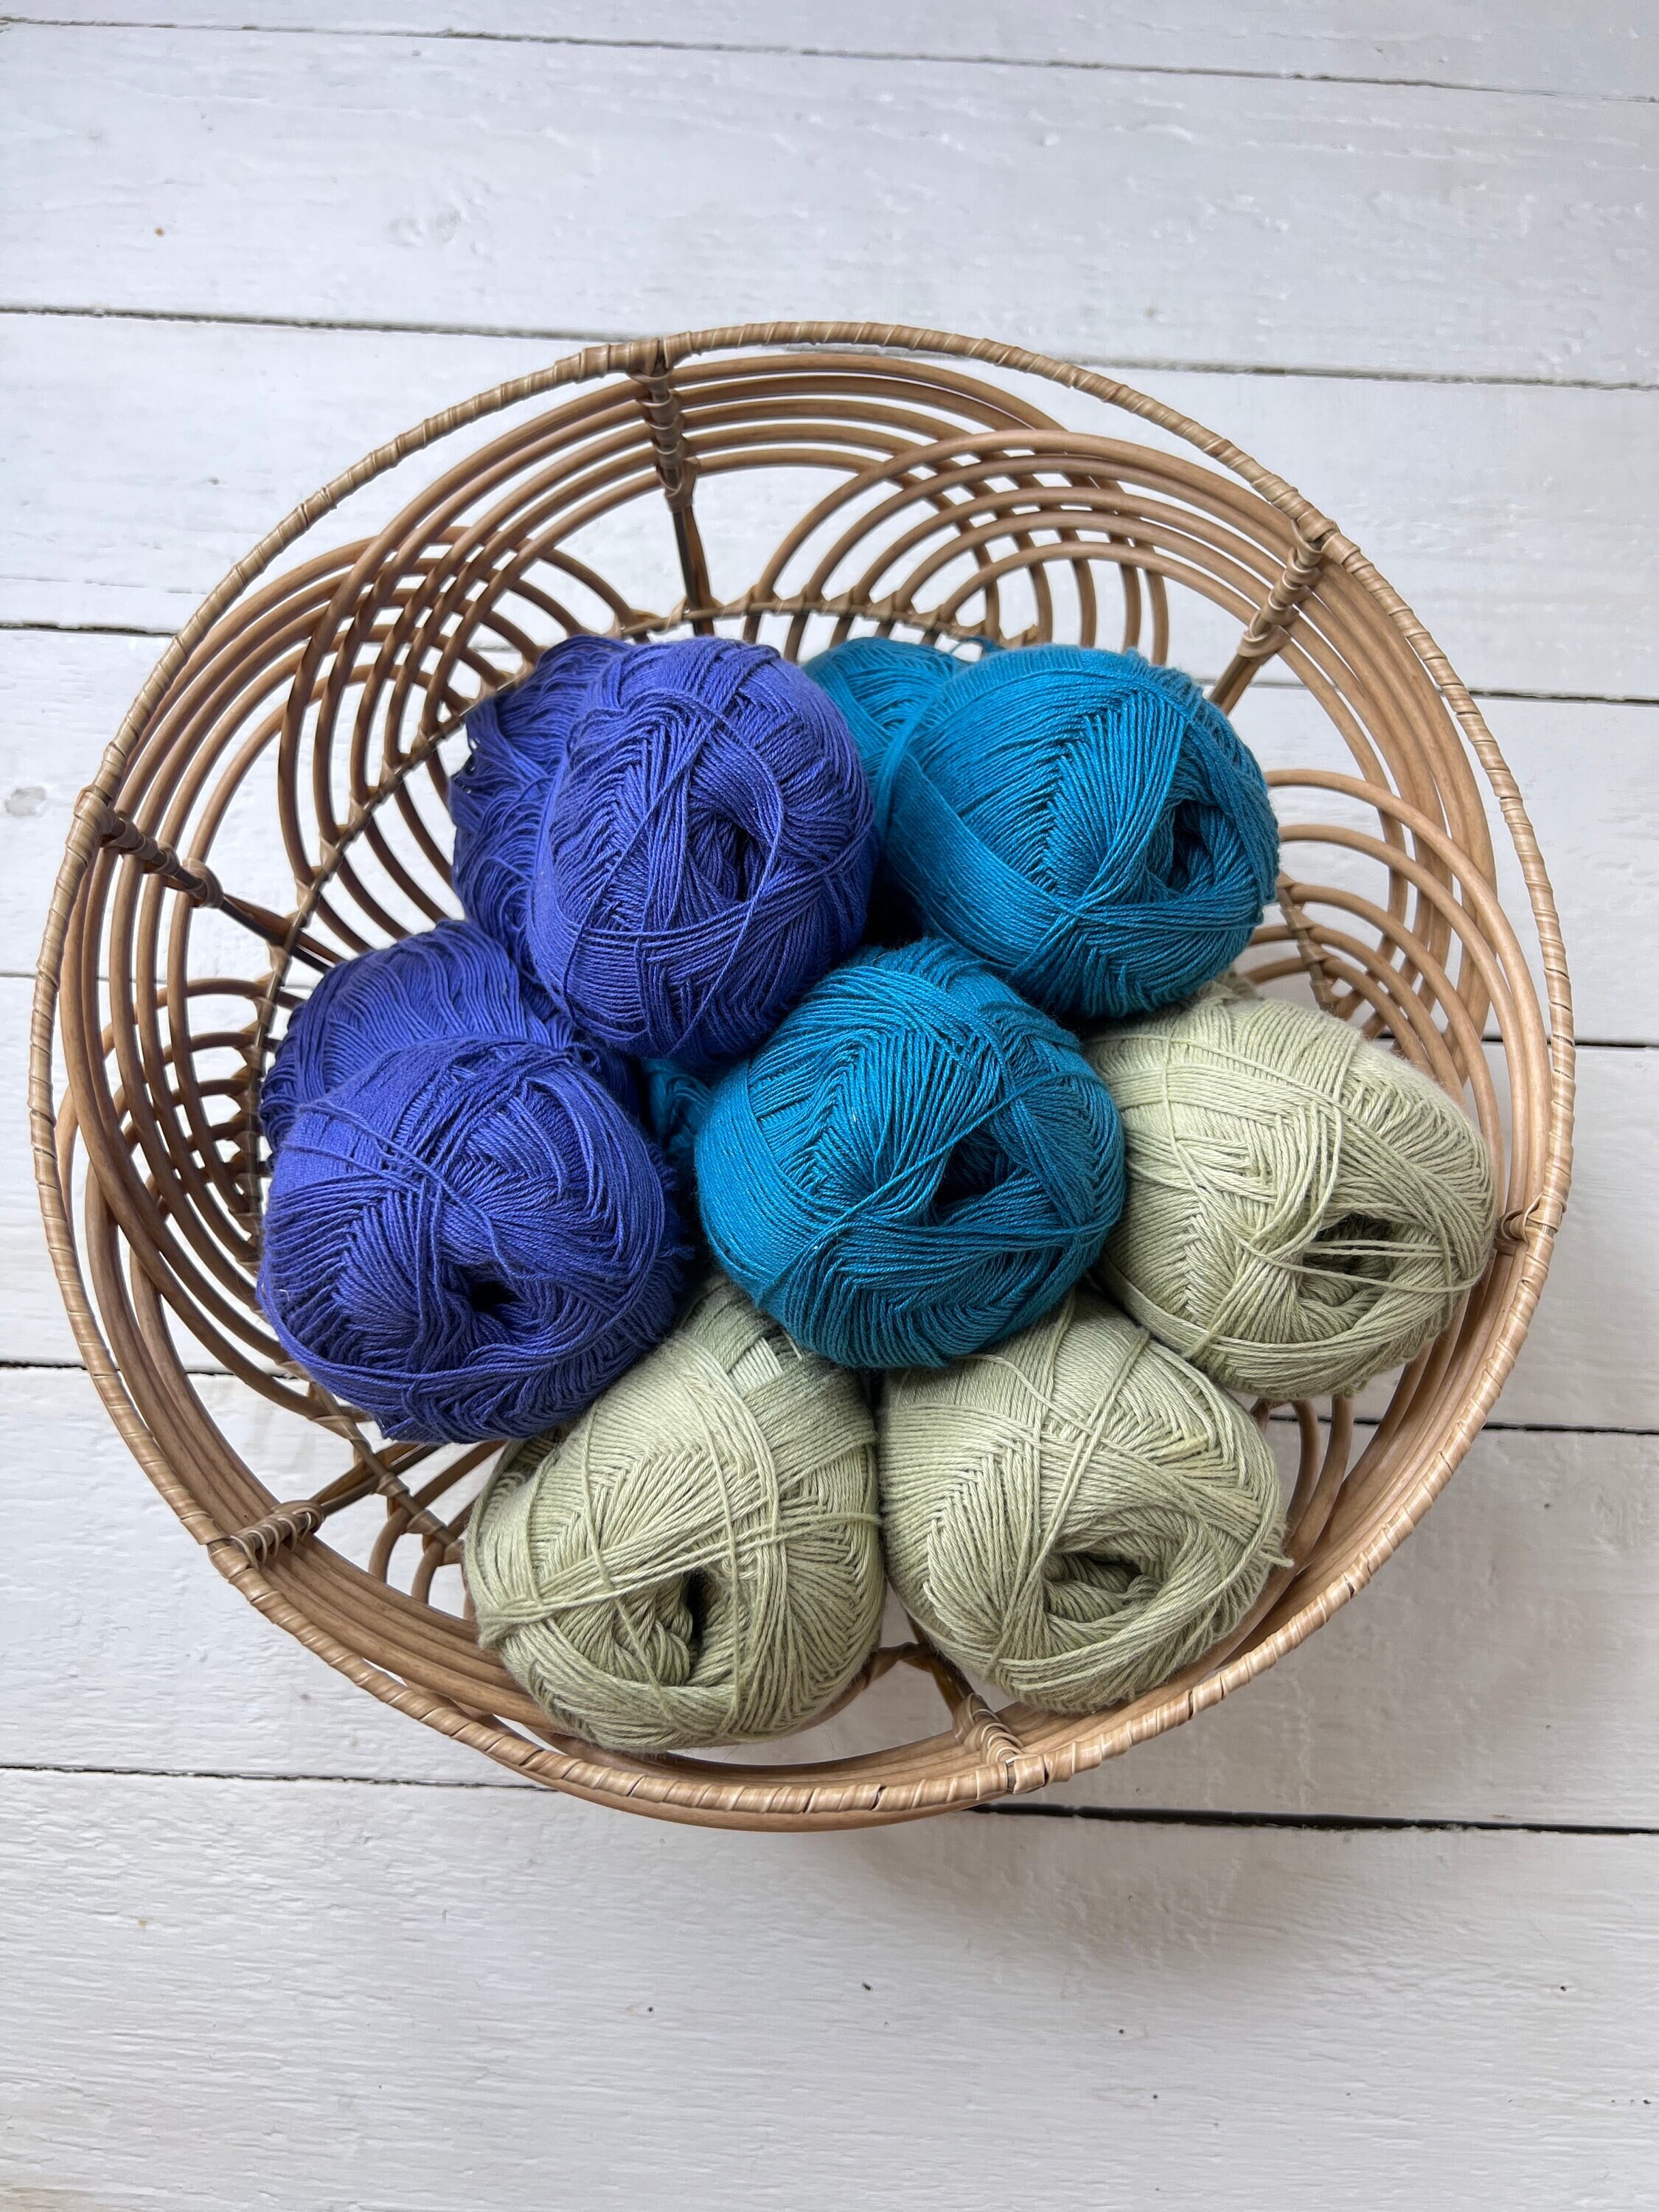 Multi Cotton Yarn Cakes in BLUE WINE, Sport DK Yarn for Crocheting